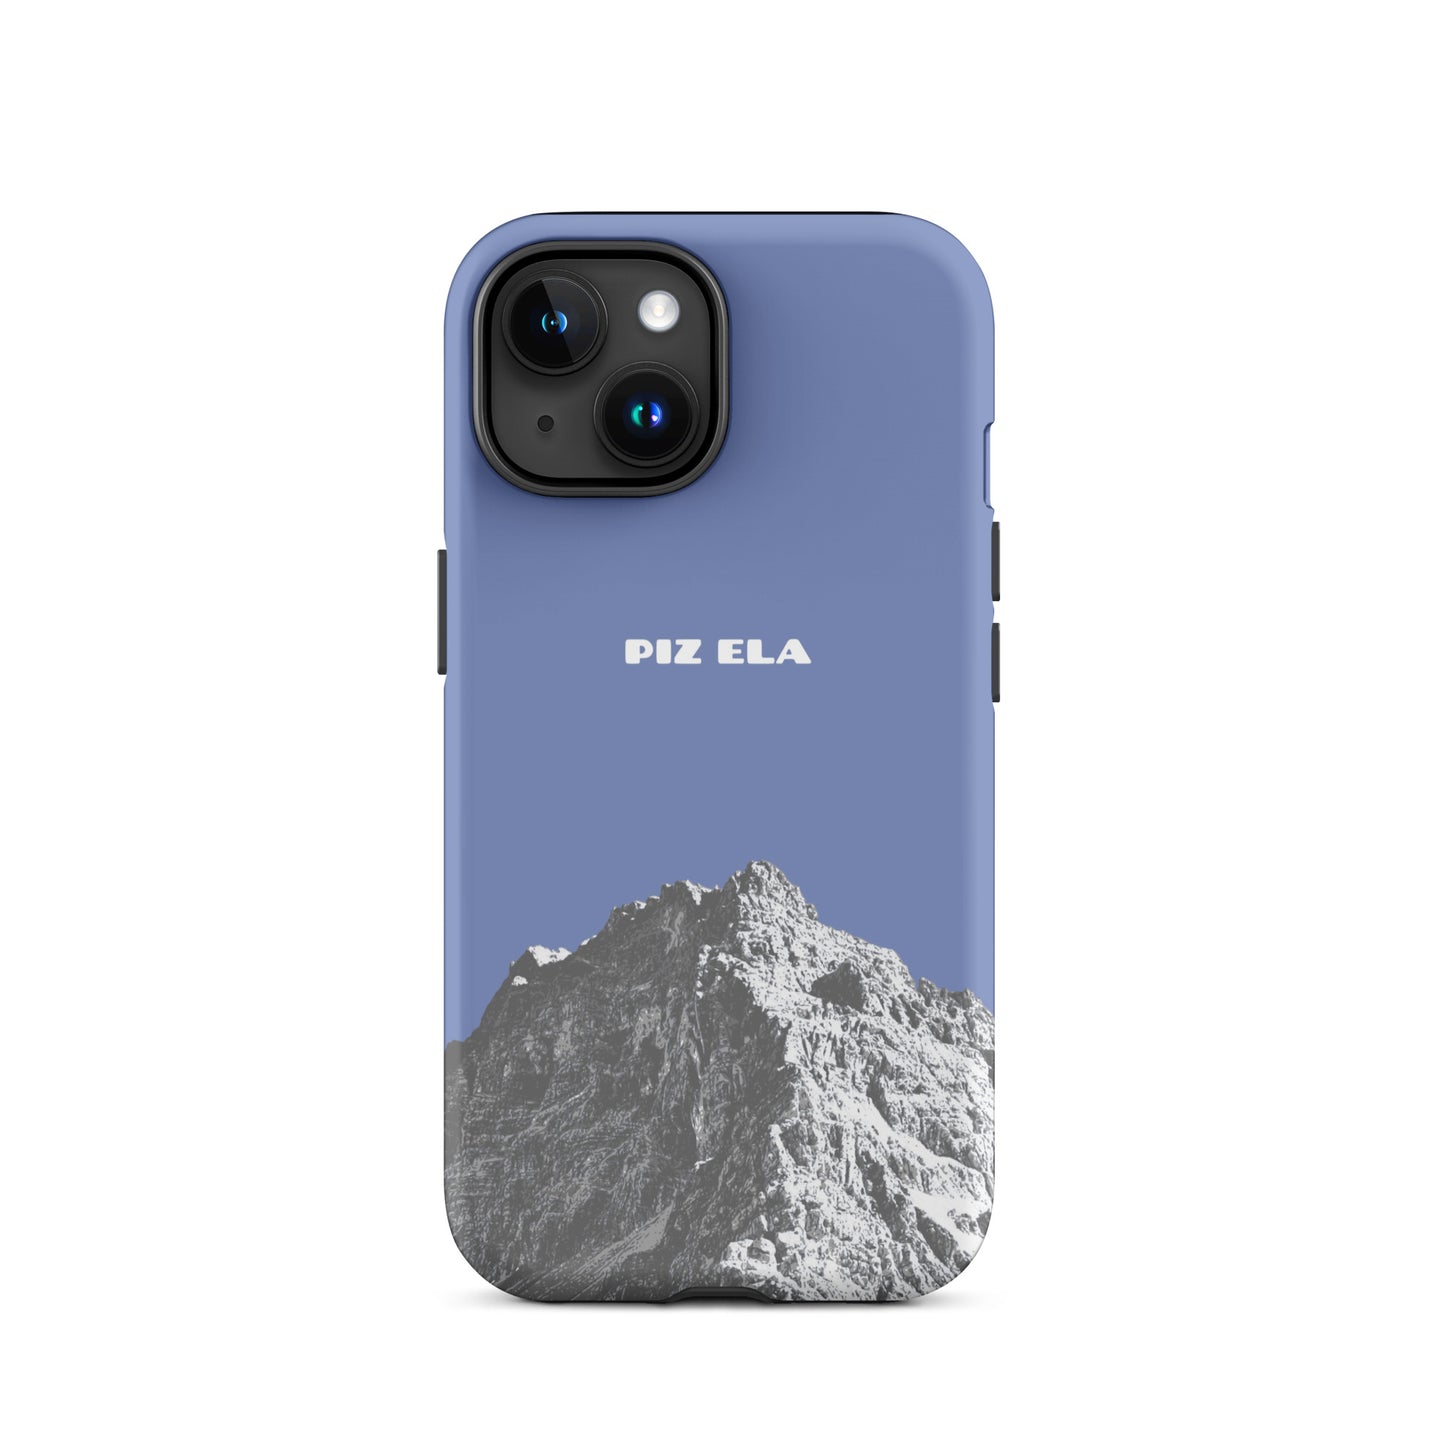 iPhone Case - Piz Ela - Pastellblau